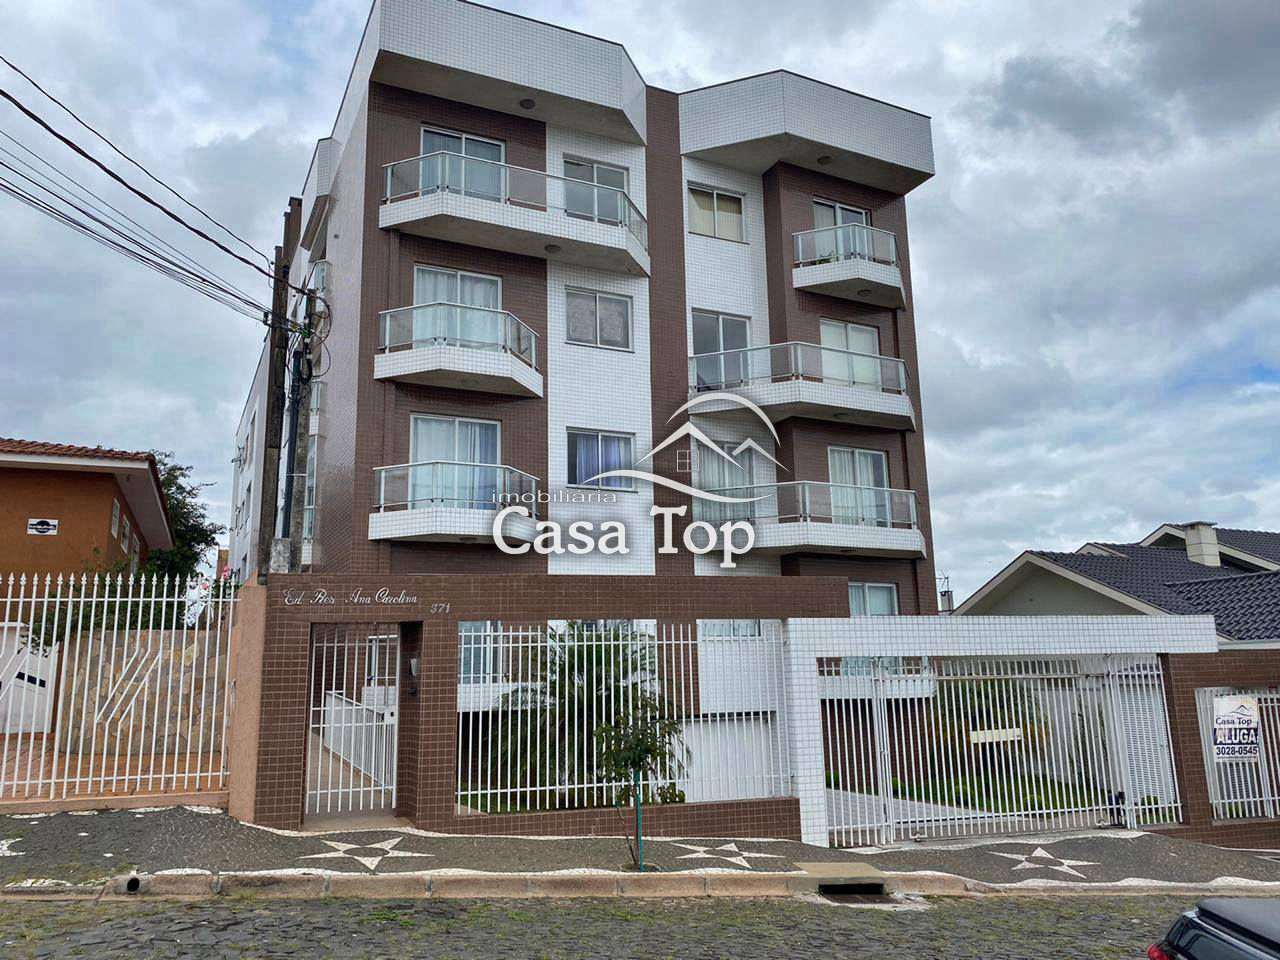 Apartamento semimobiliado à venda Jardim Carvalho - Edifício Ana Carolina